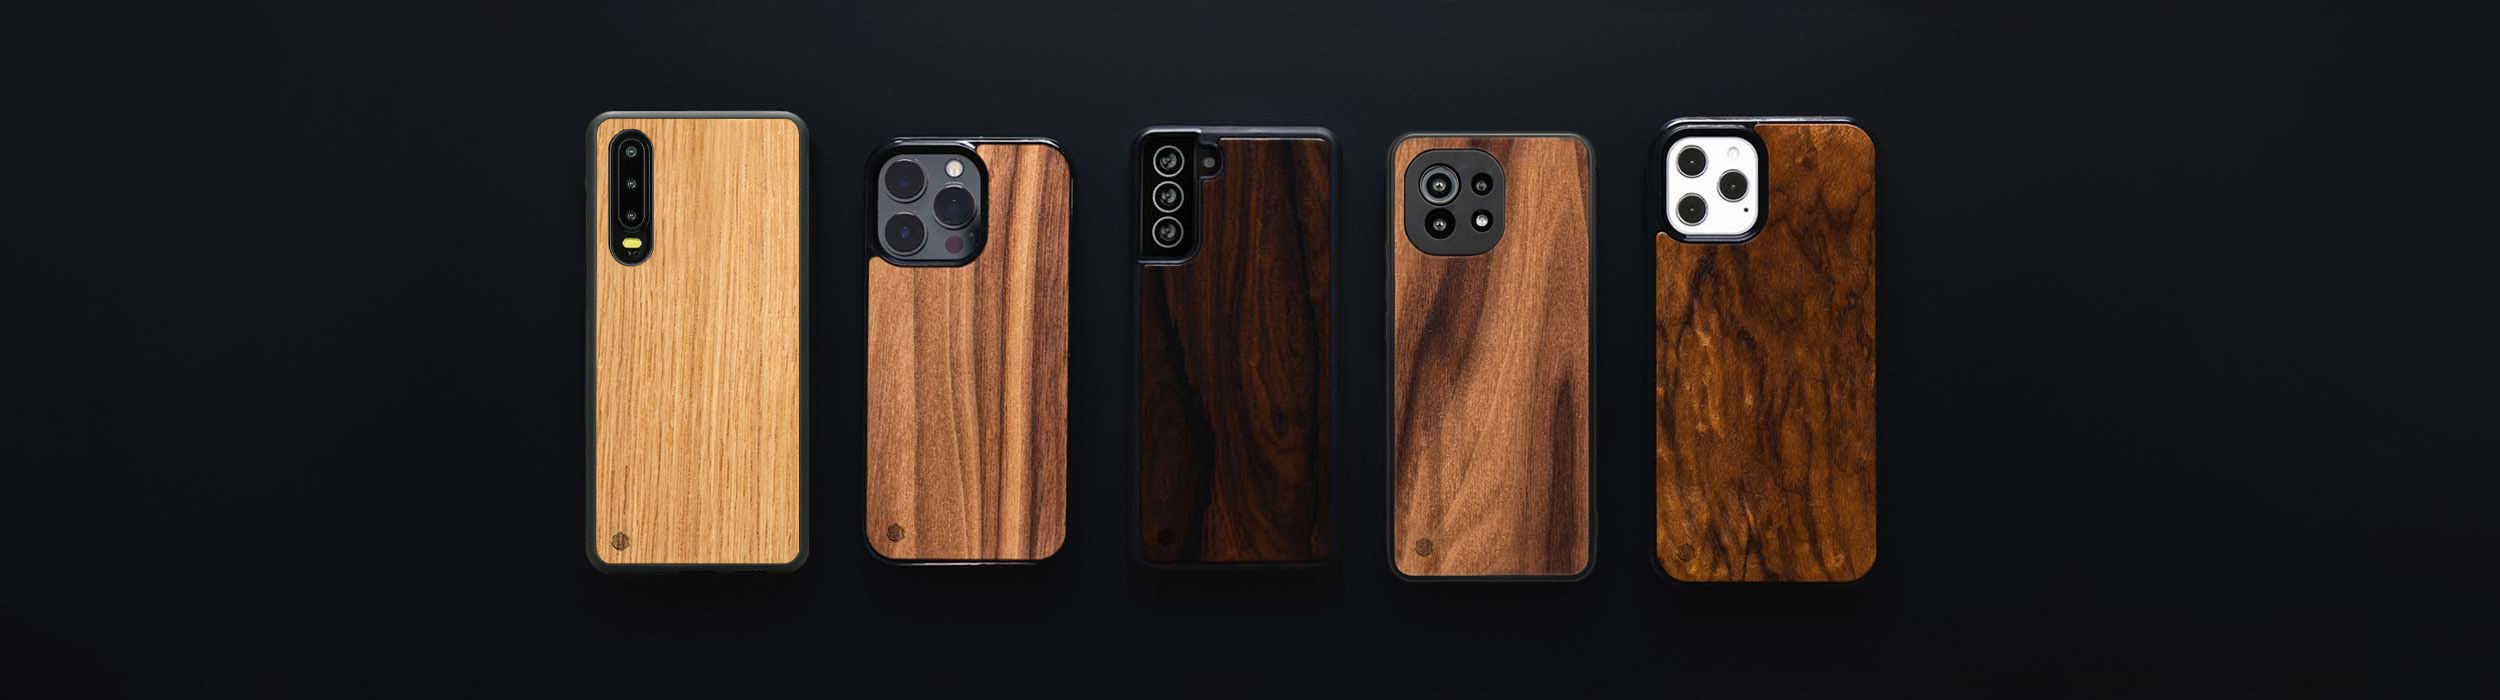 Huawei P30 Pro Handyhüllen aus Holz